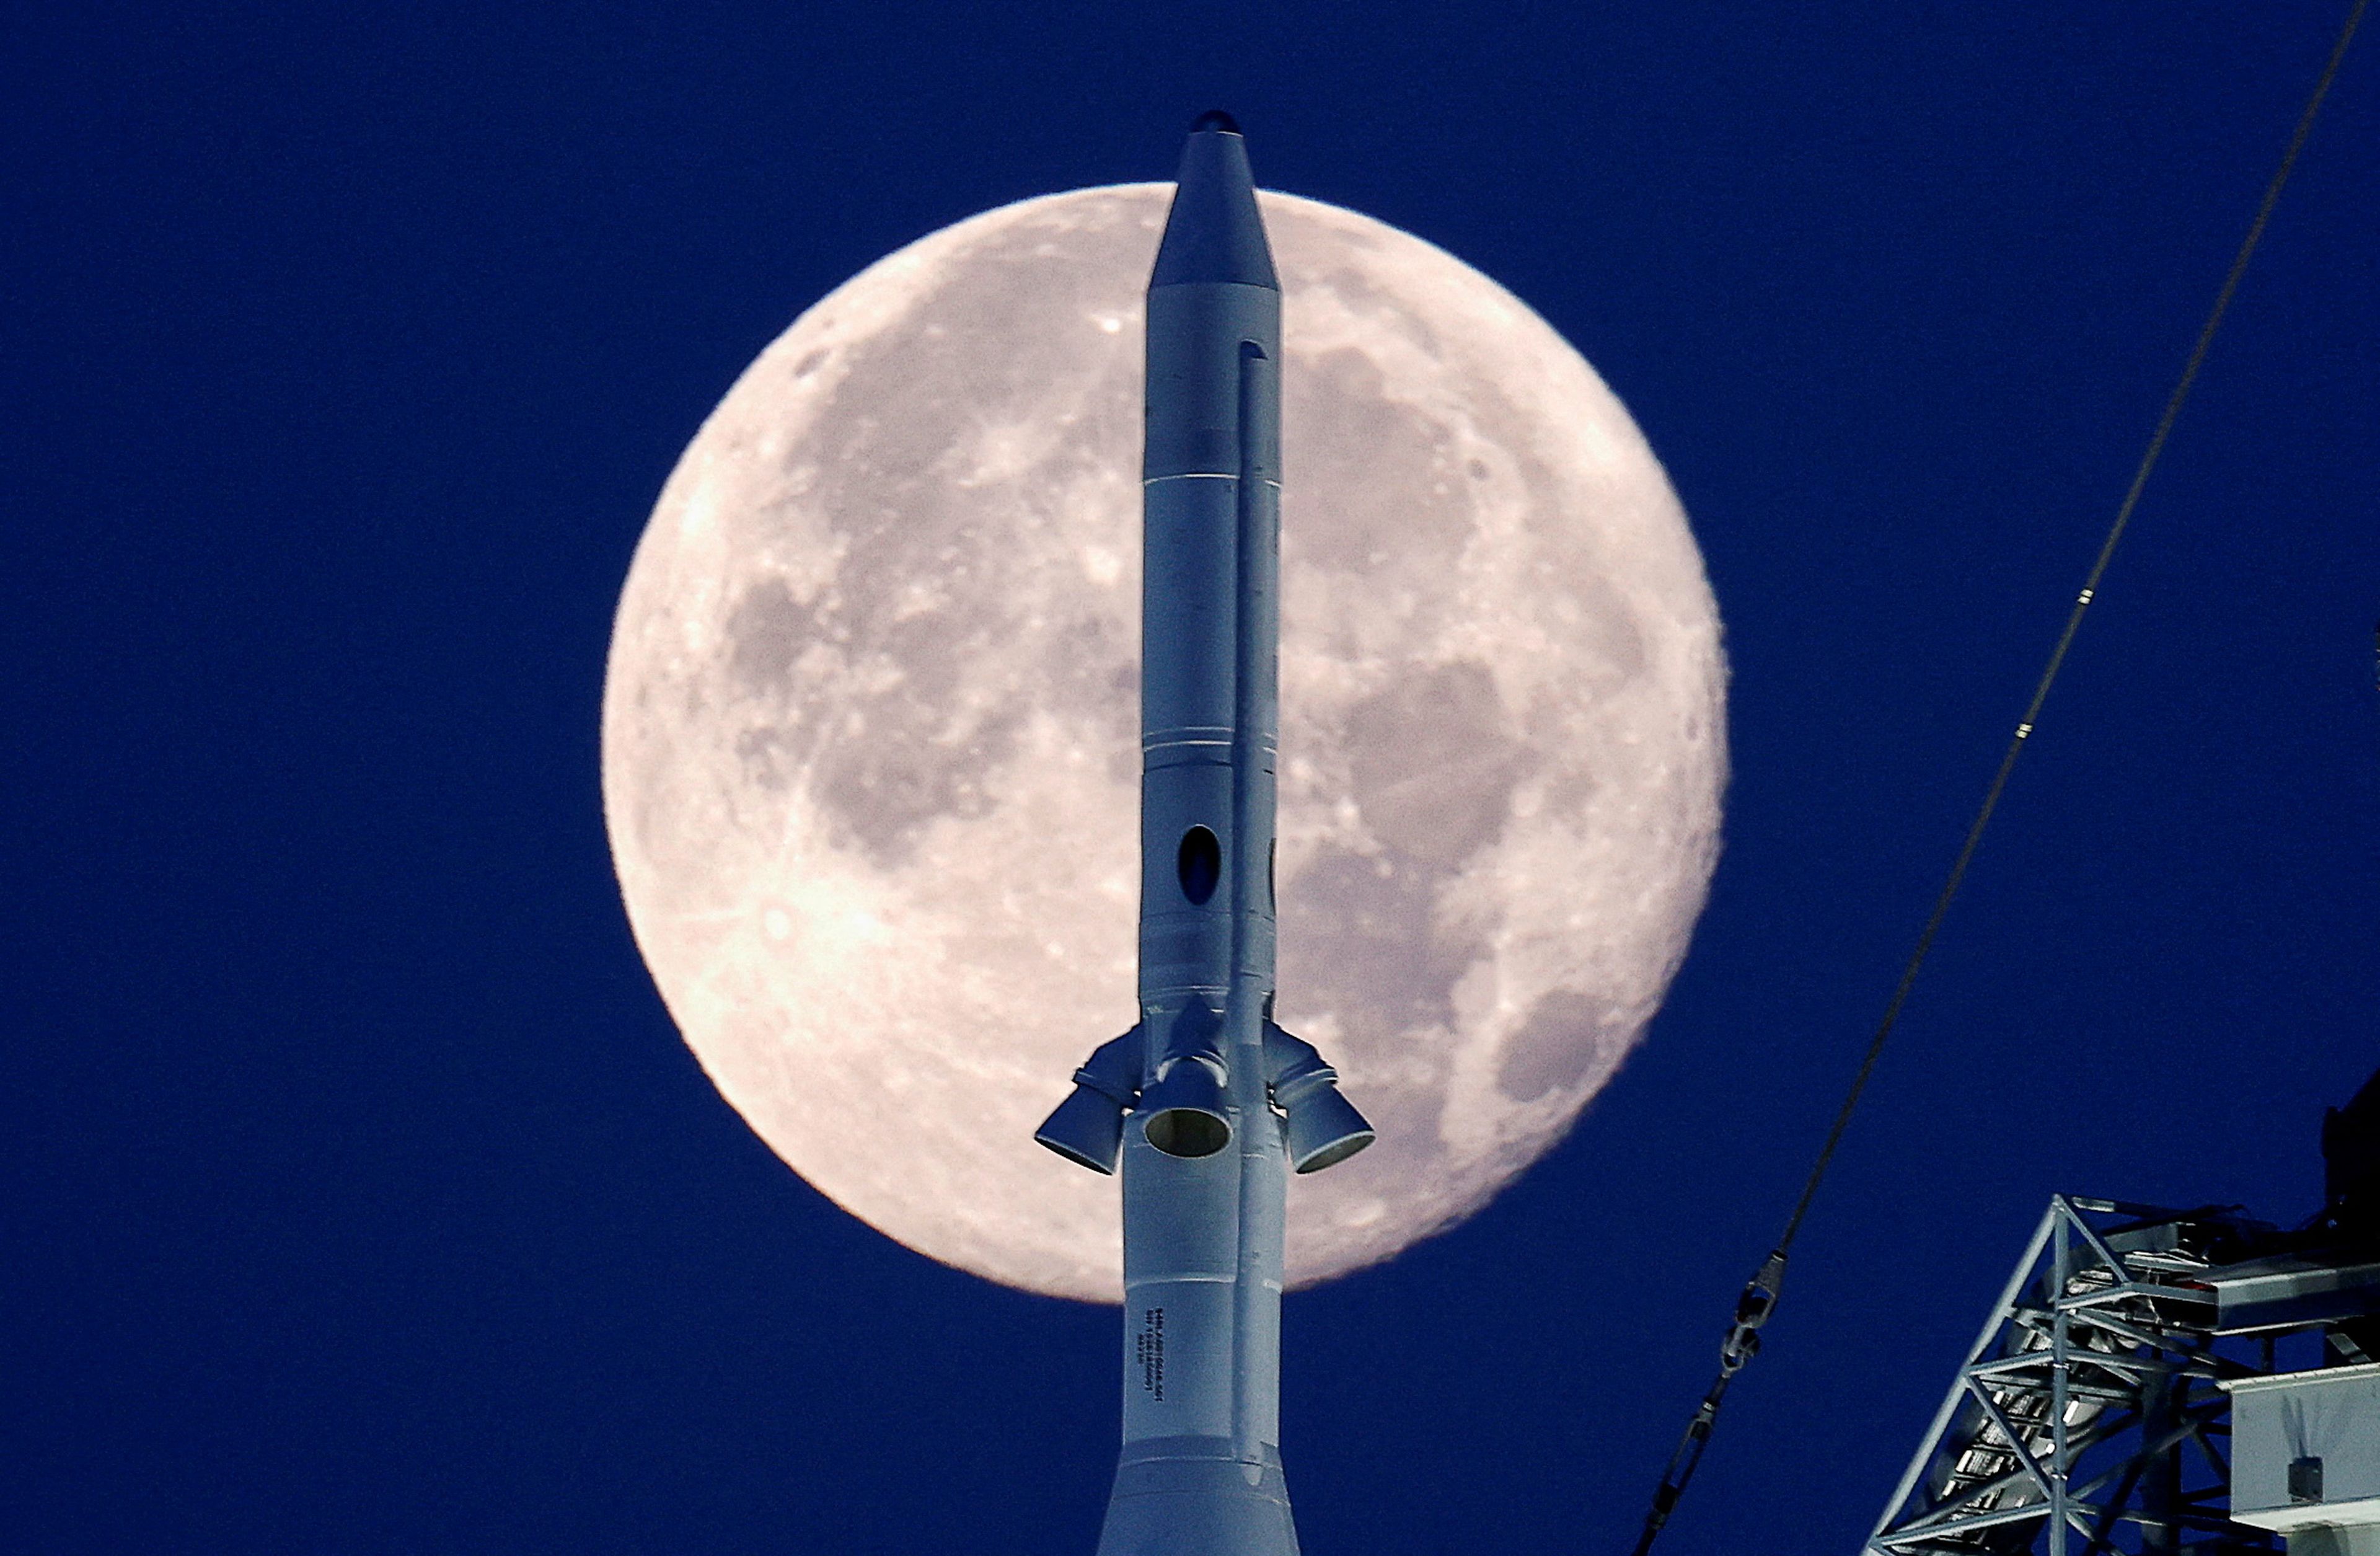 Imagen de la Luna junto a un cohete de la misión Artemis 1 de la NASA, el 15 de junio de 2022.